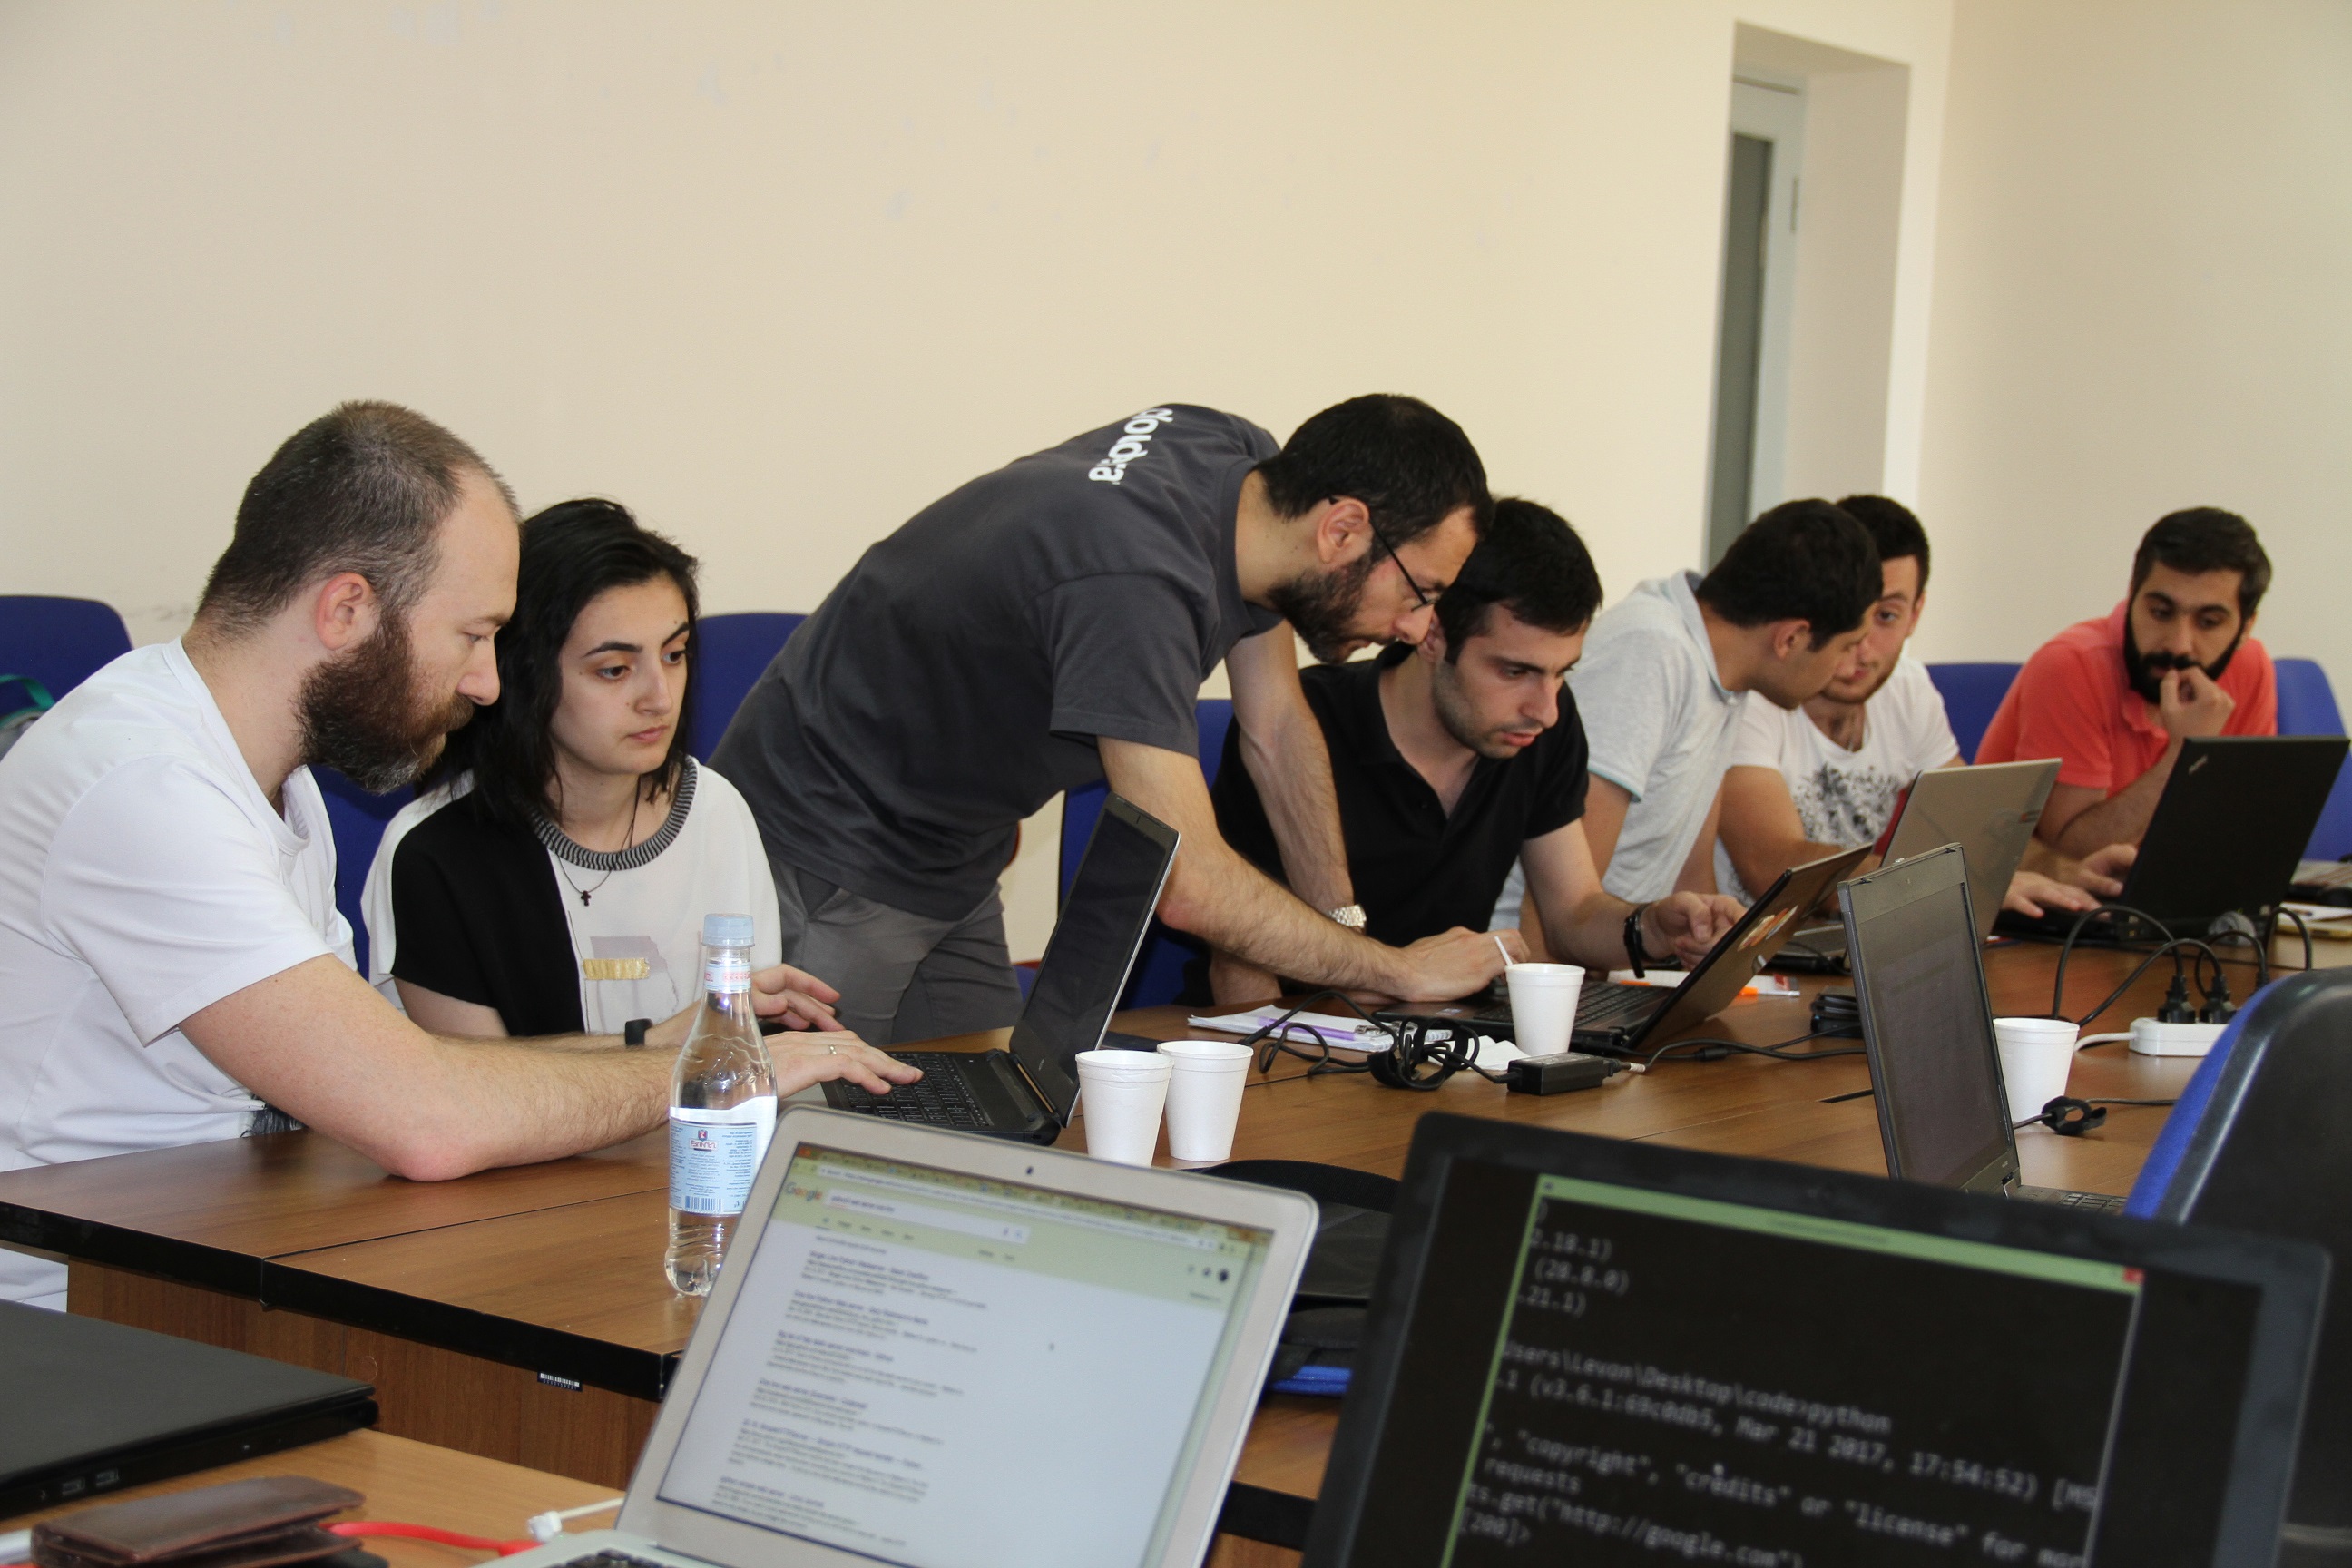 Beeline-ում Python ծրագրավորման լեզվին նվիրված վարպետության դաս է անցել հայ ՏՏ-մասնագետների համար